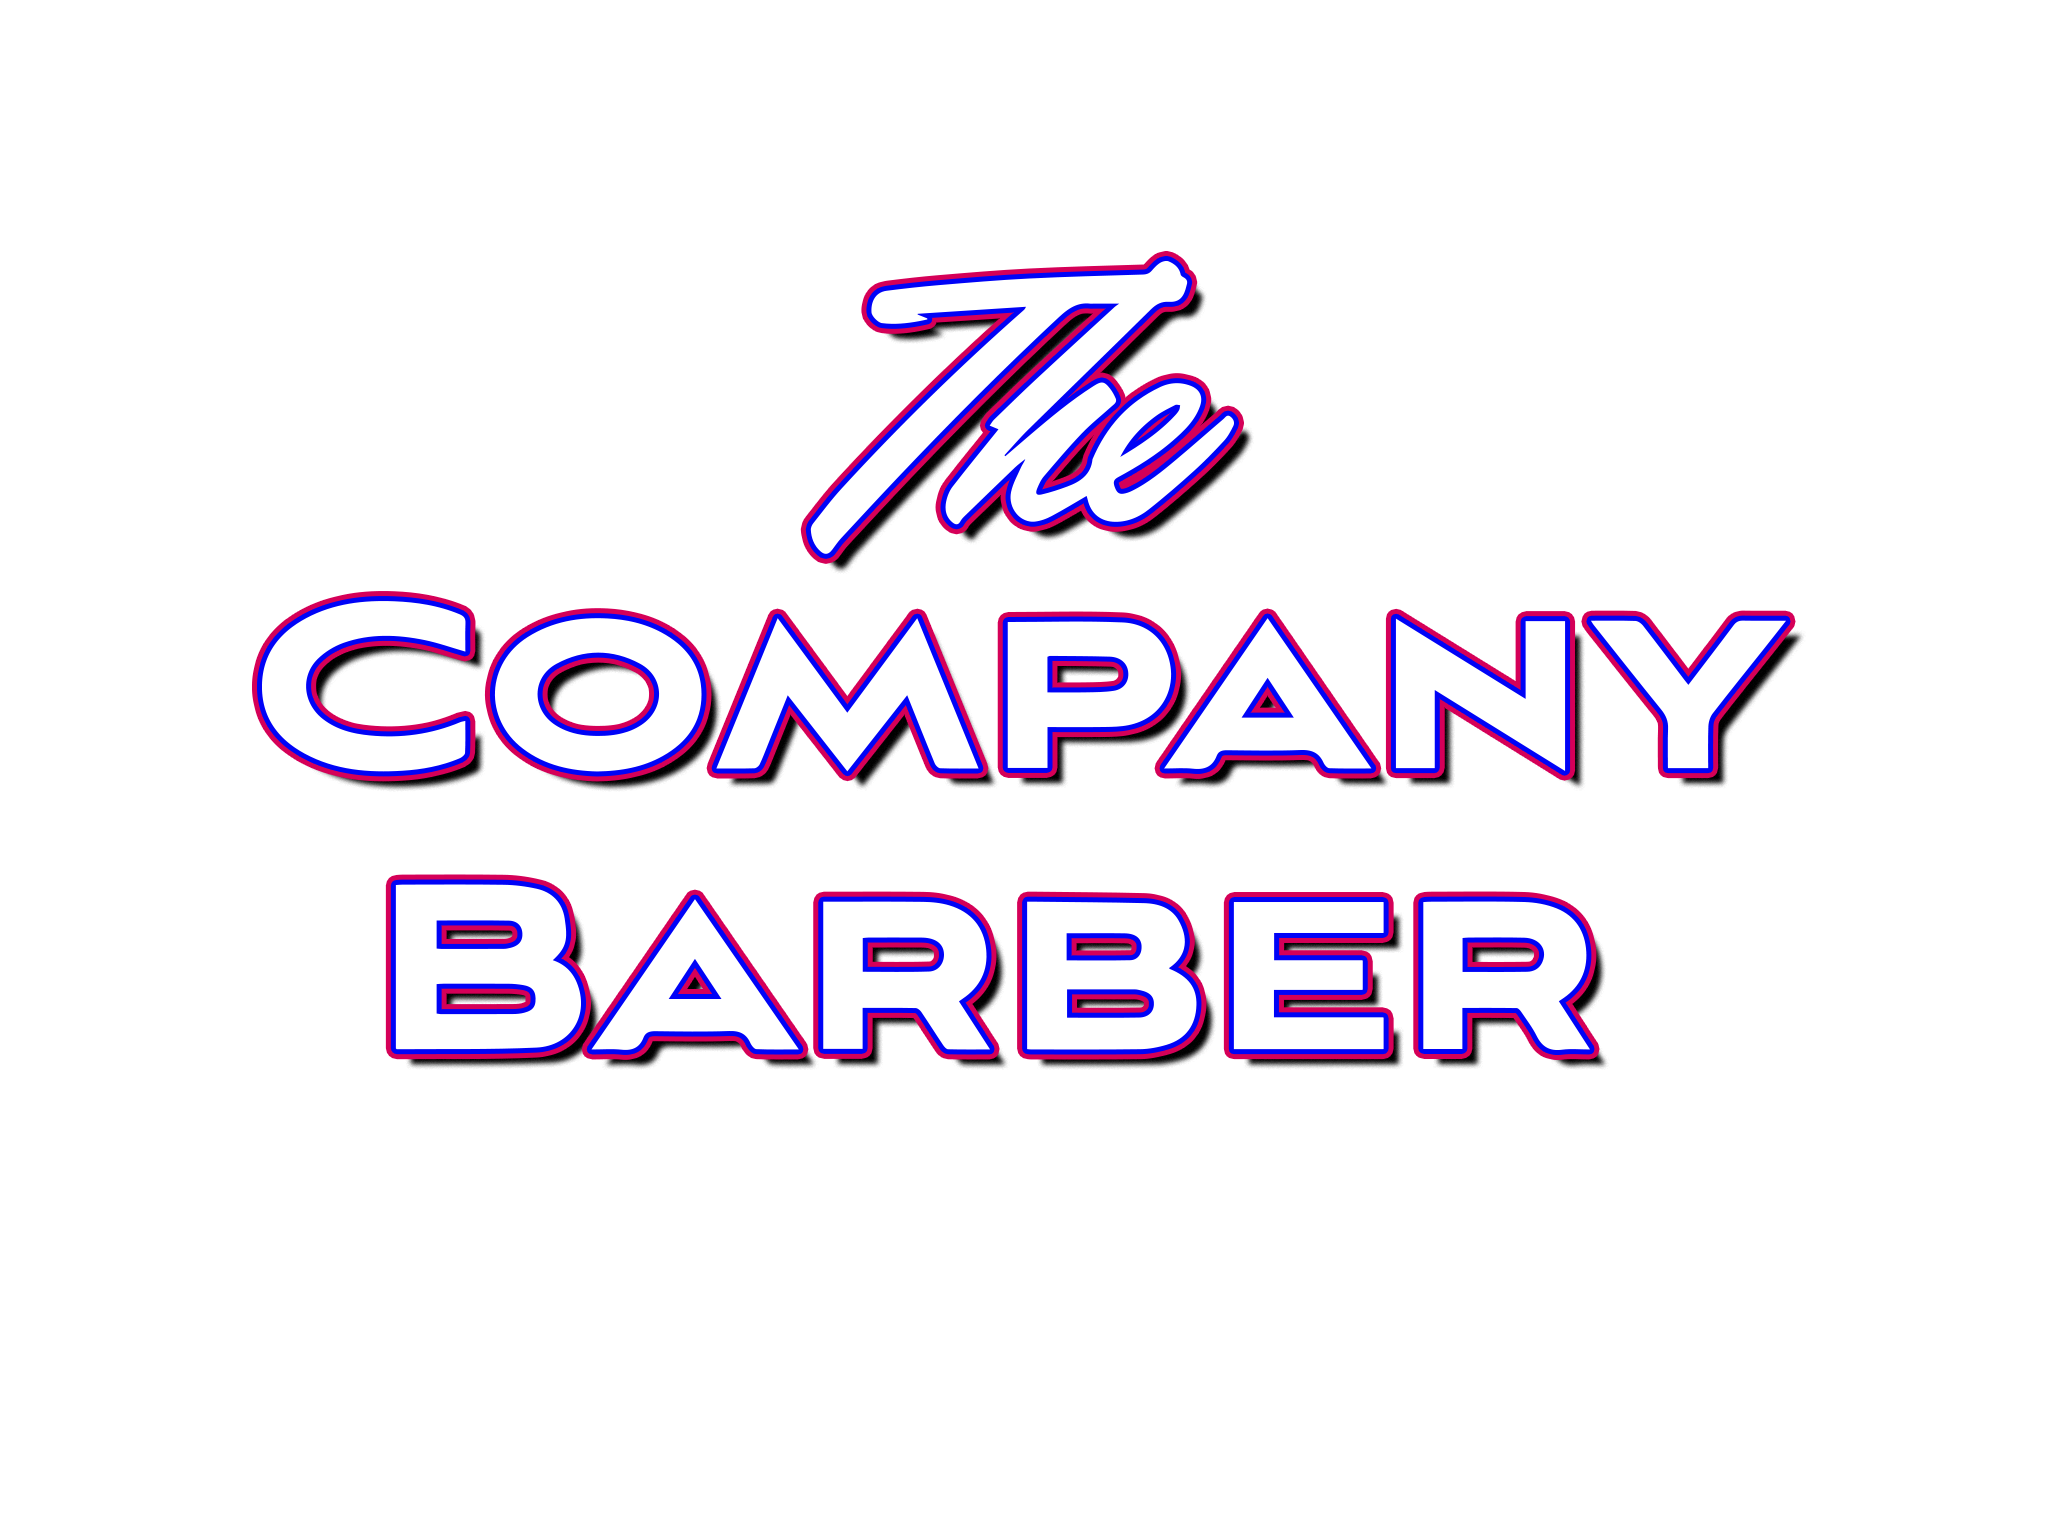 Barber Shop White Transparent, Barber Shop Icon Pictures, Barber